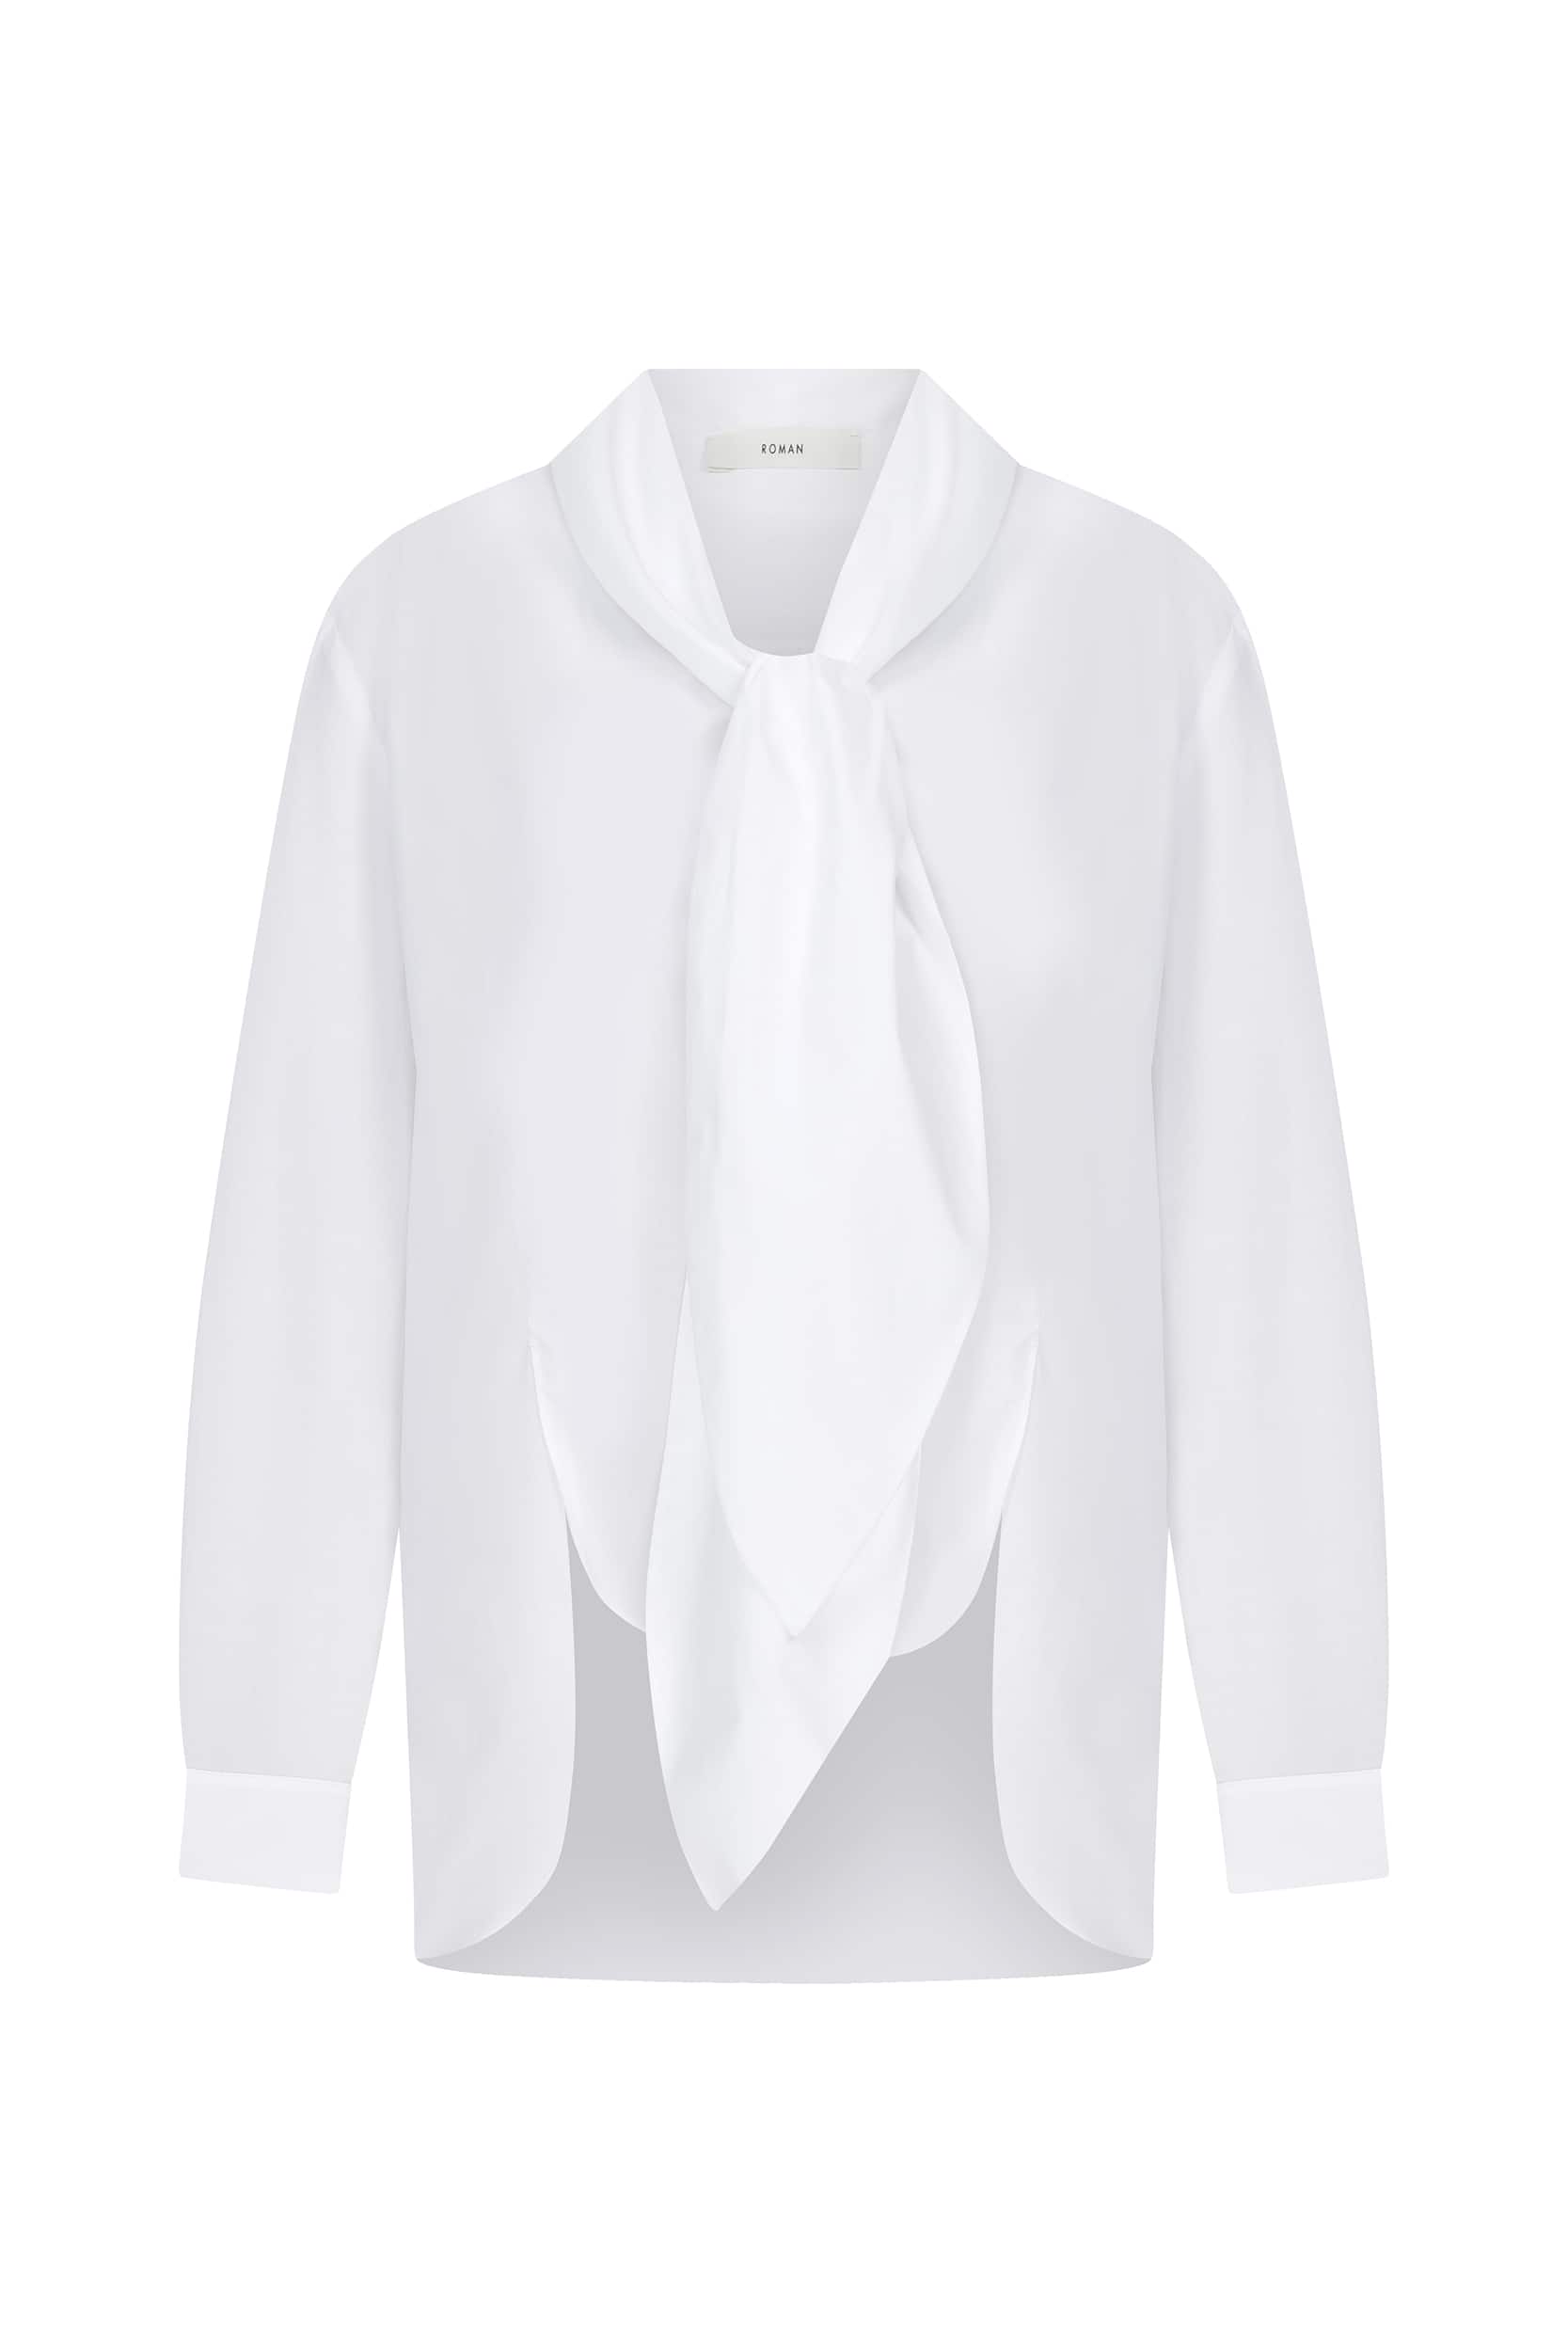 Necktie Detailed Shirt -- [WHITE]